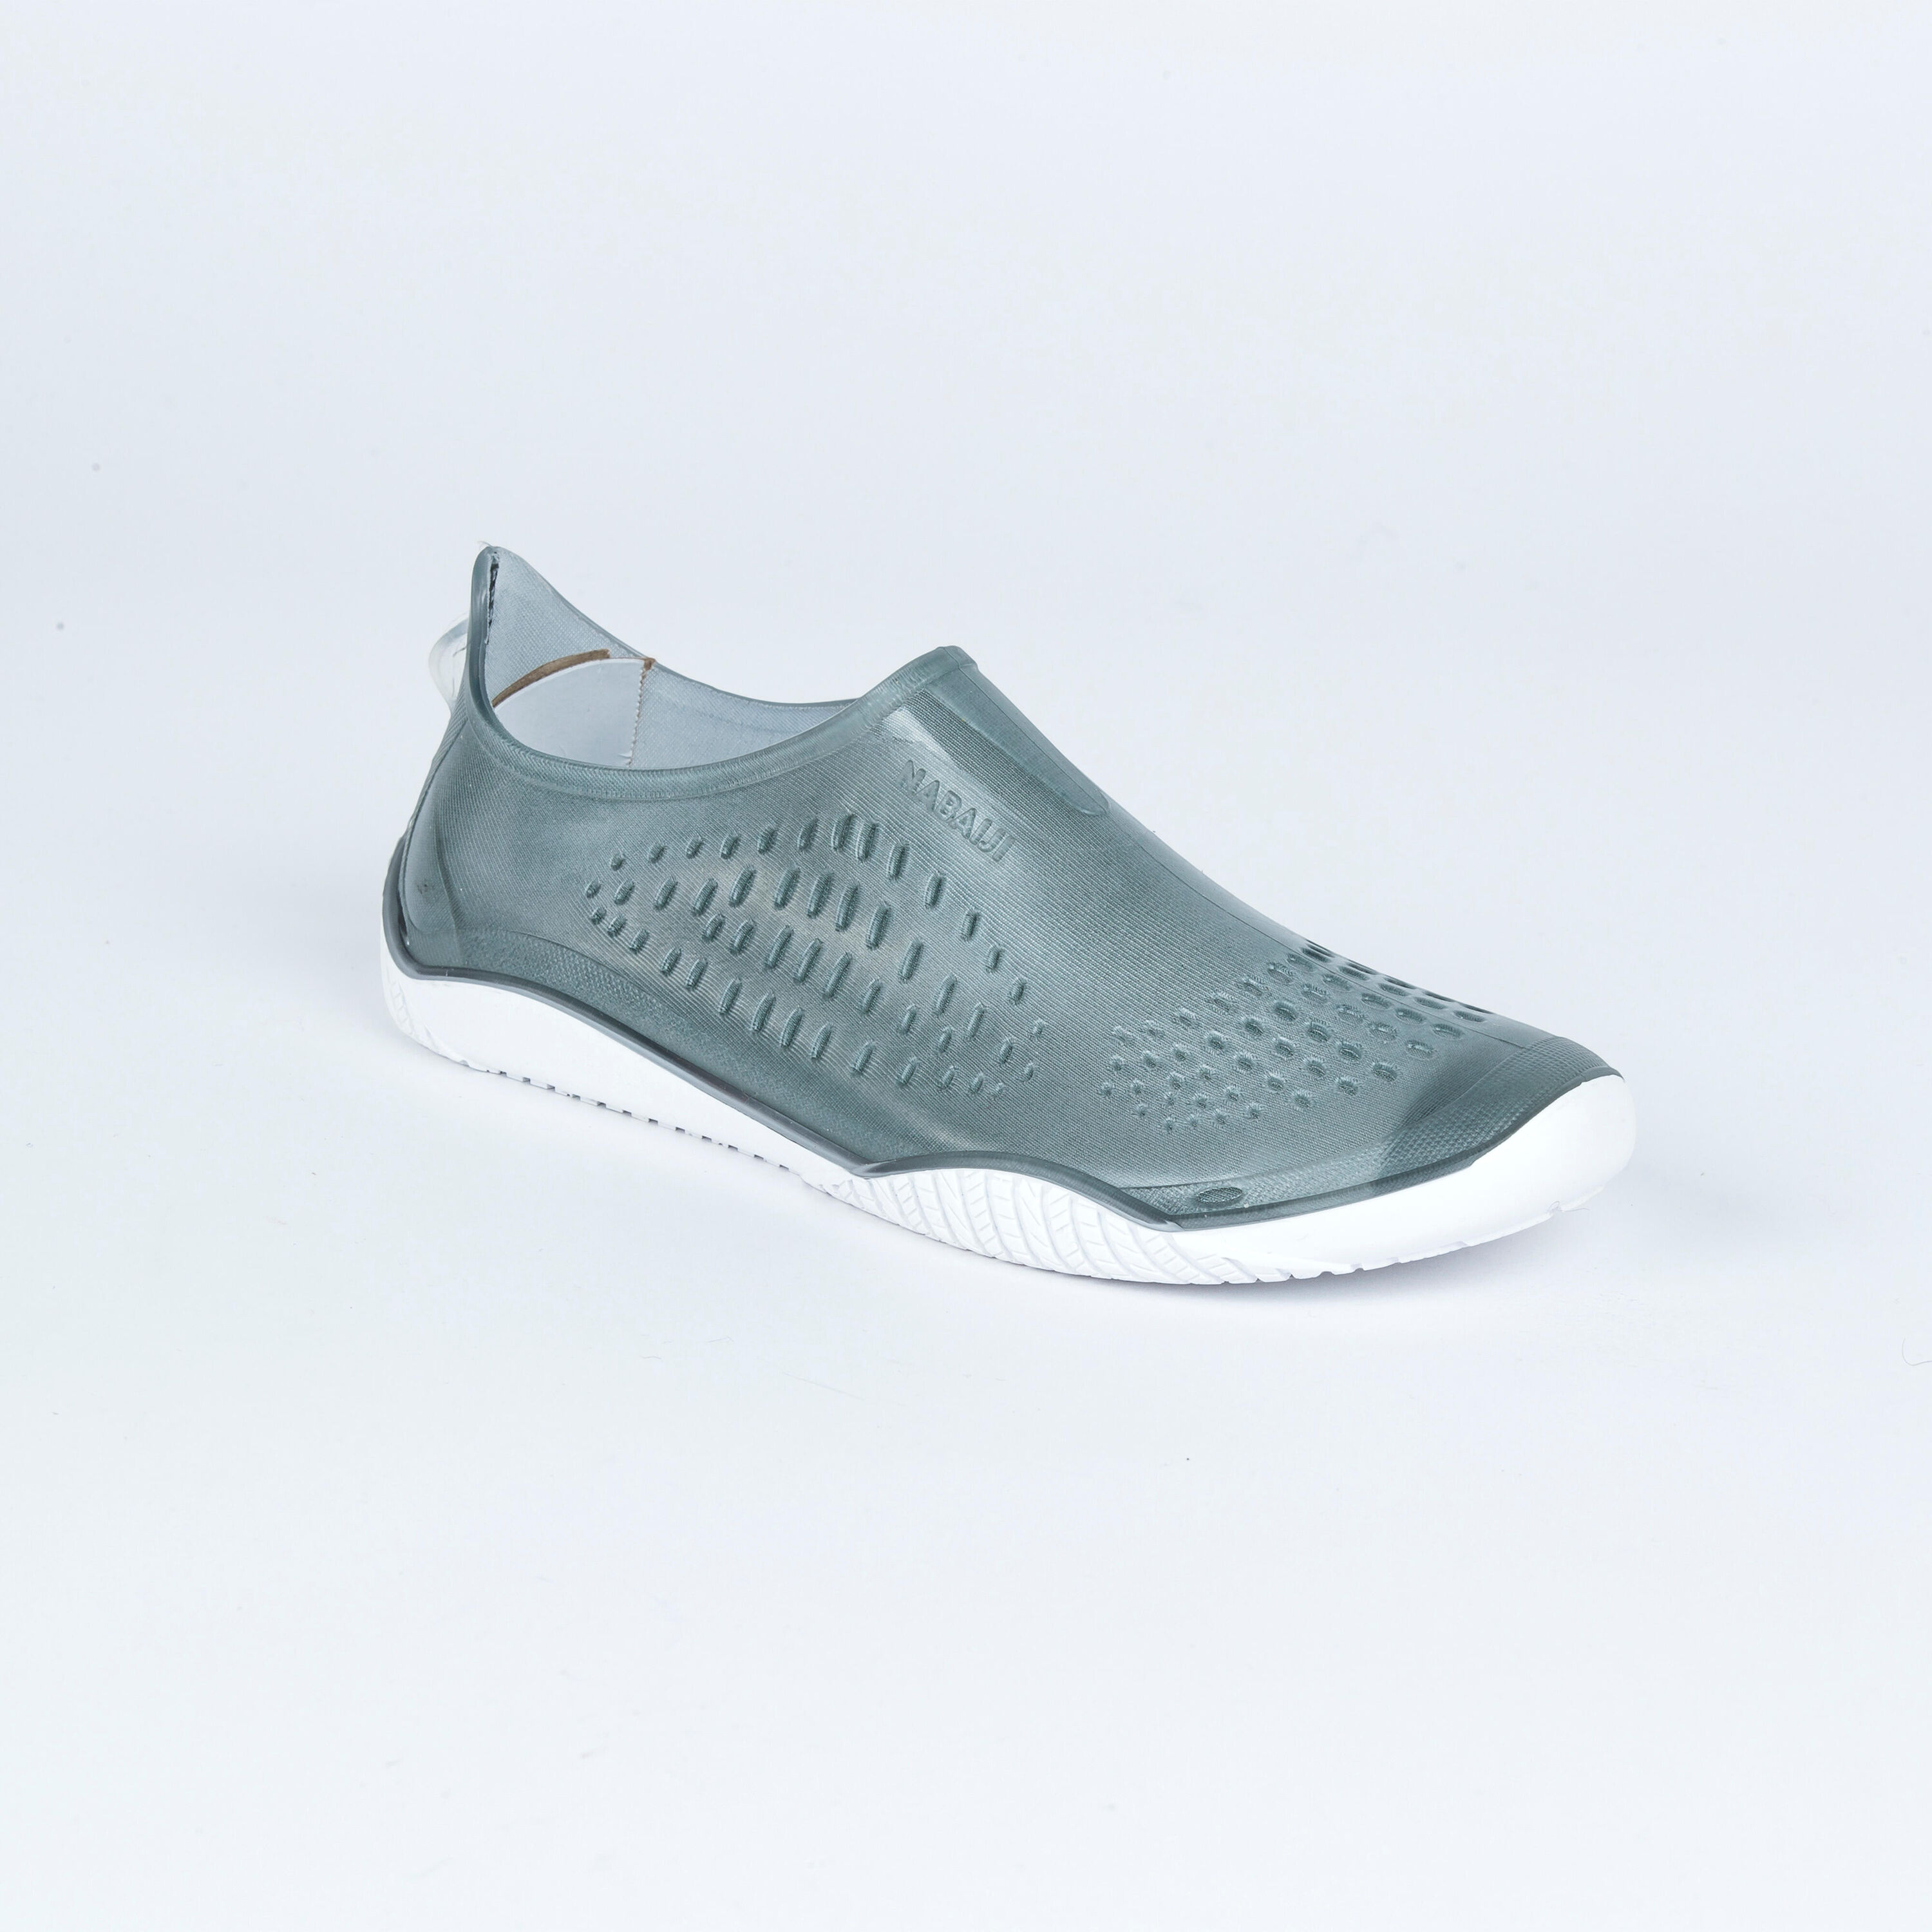 NABAIJI Aquabike-Aquafit Water Shoes Fitshoe Khaki Green